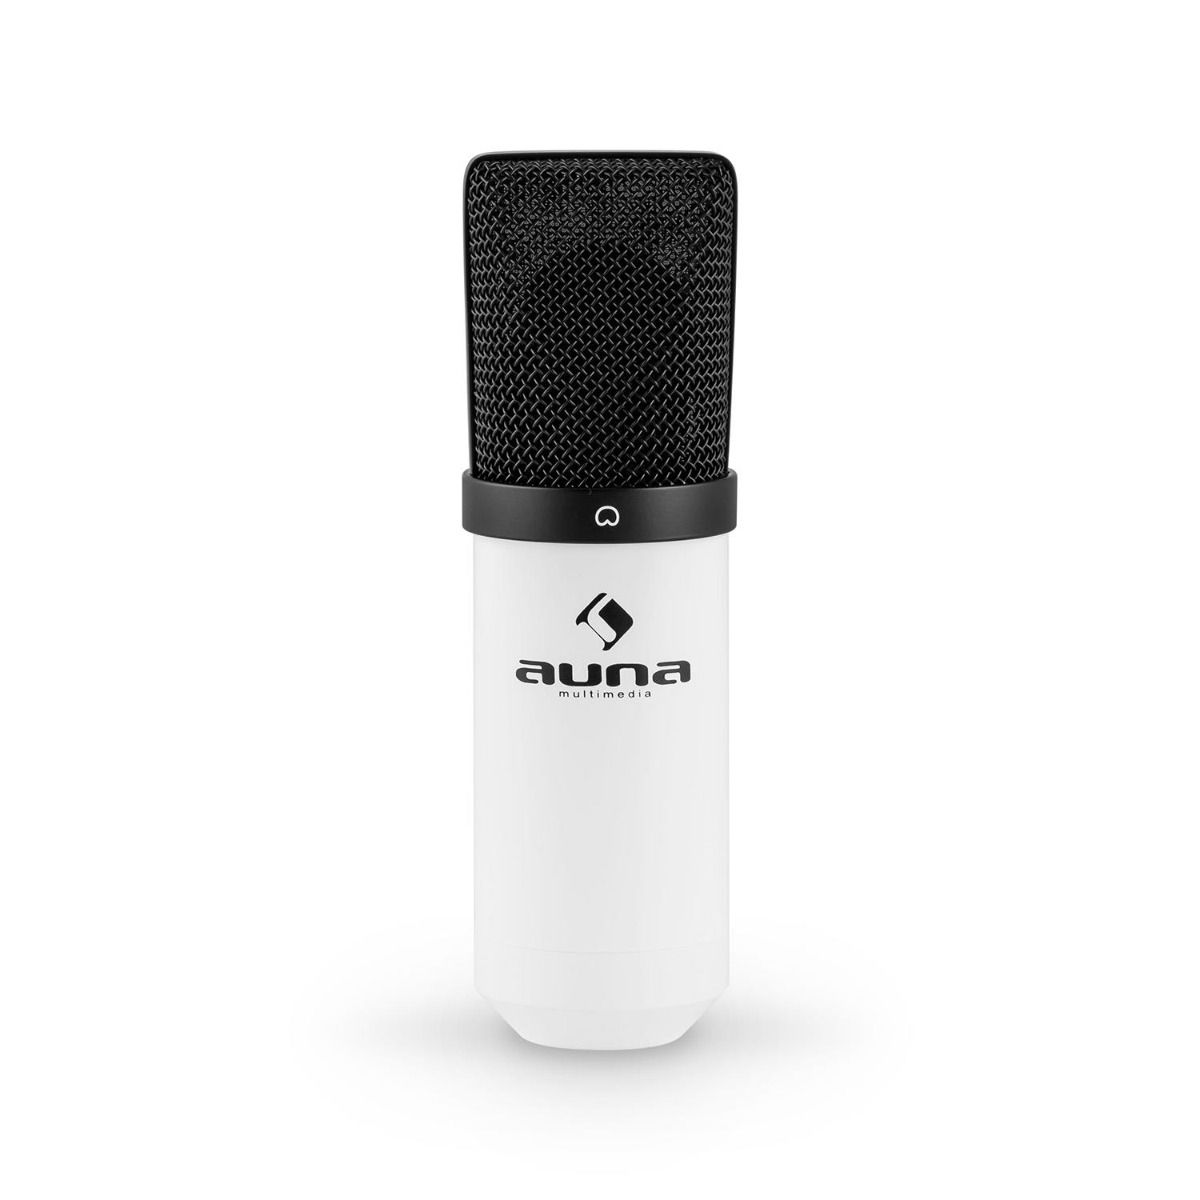 Auna mic 900wh witte usb studio condensator microfoon met shockmount 6